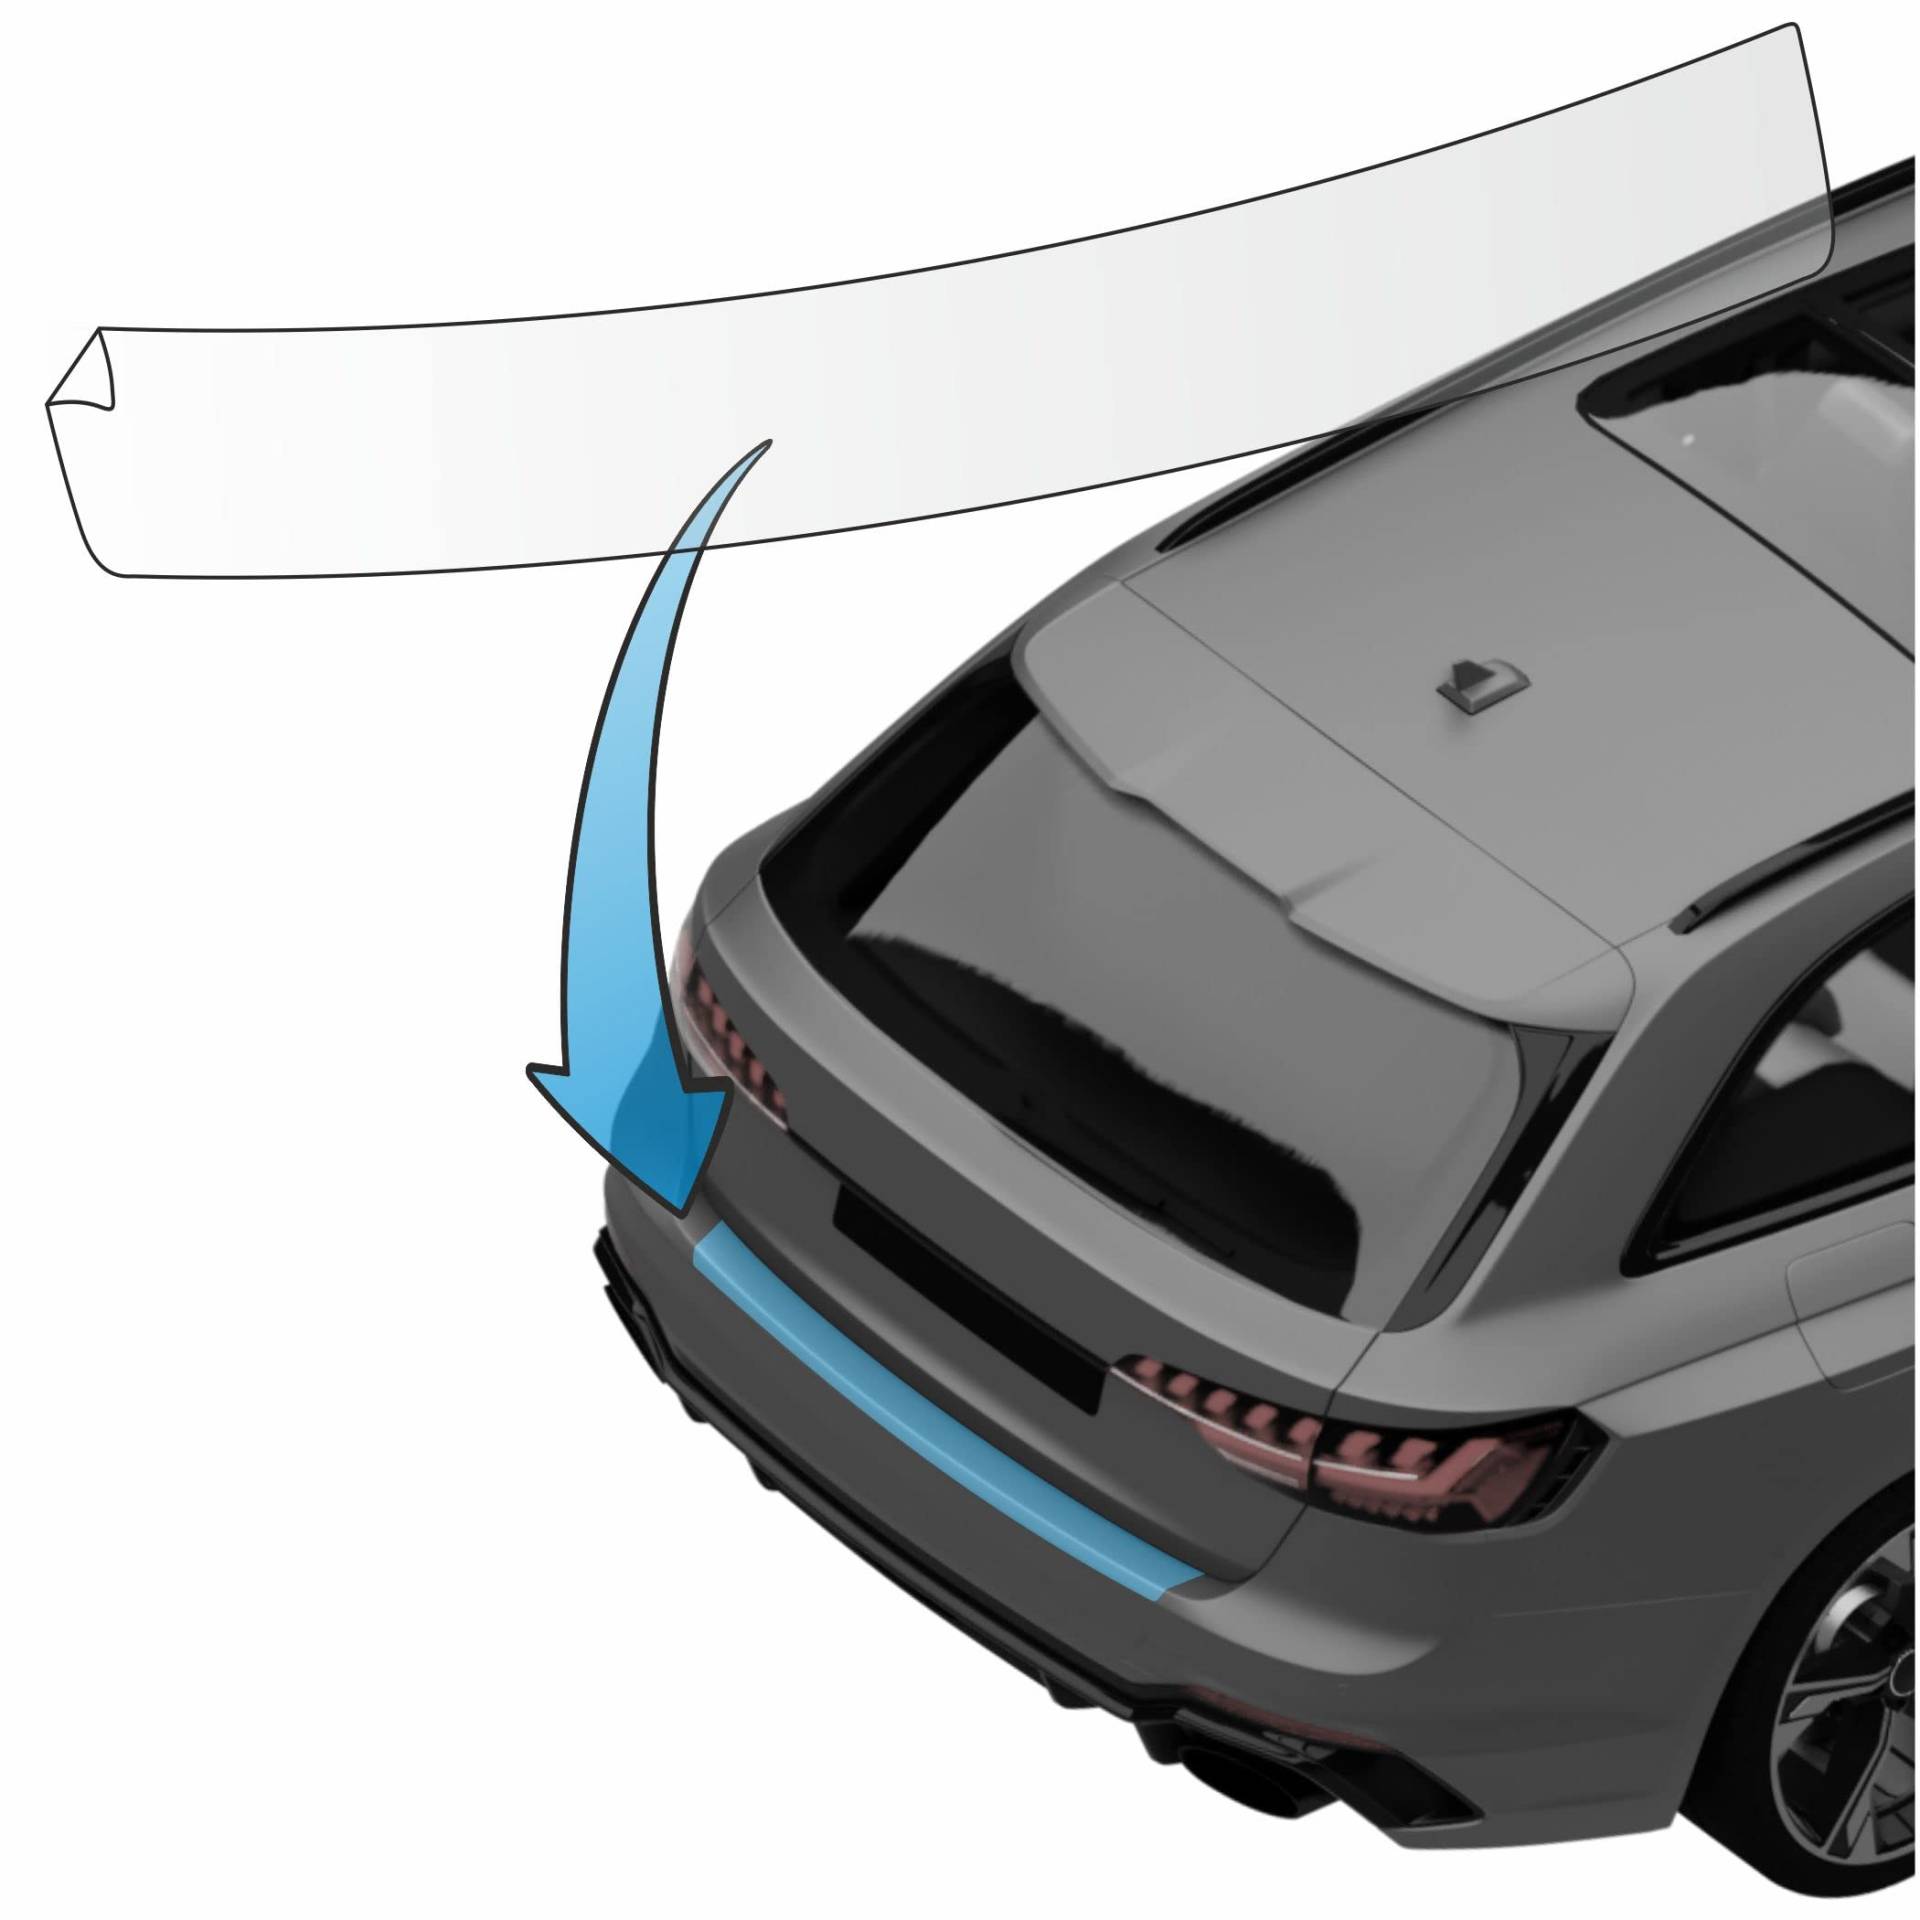 MisterLacky – Lackschutzfolie mit Rakel als Ladekantenschutz Folie passend für BMW X3 (III) Typ G01, ab BJ 11/2017 in transparent (320µm) von Lackschutzshop